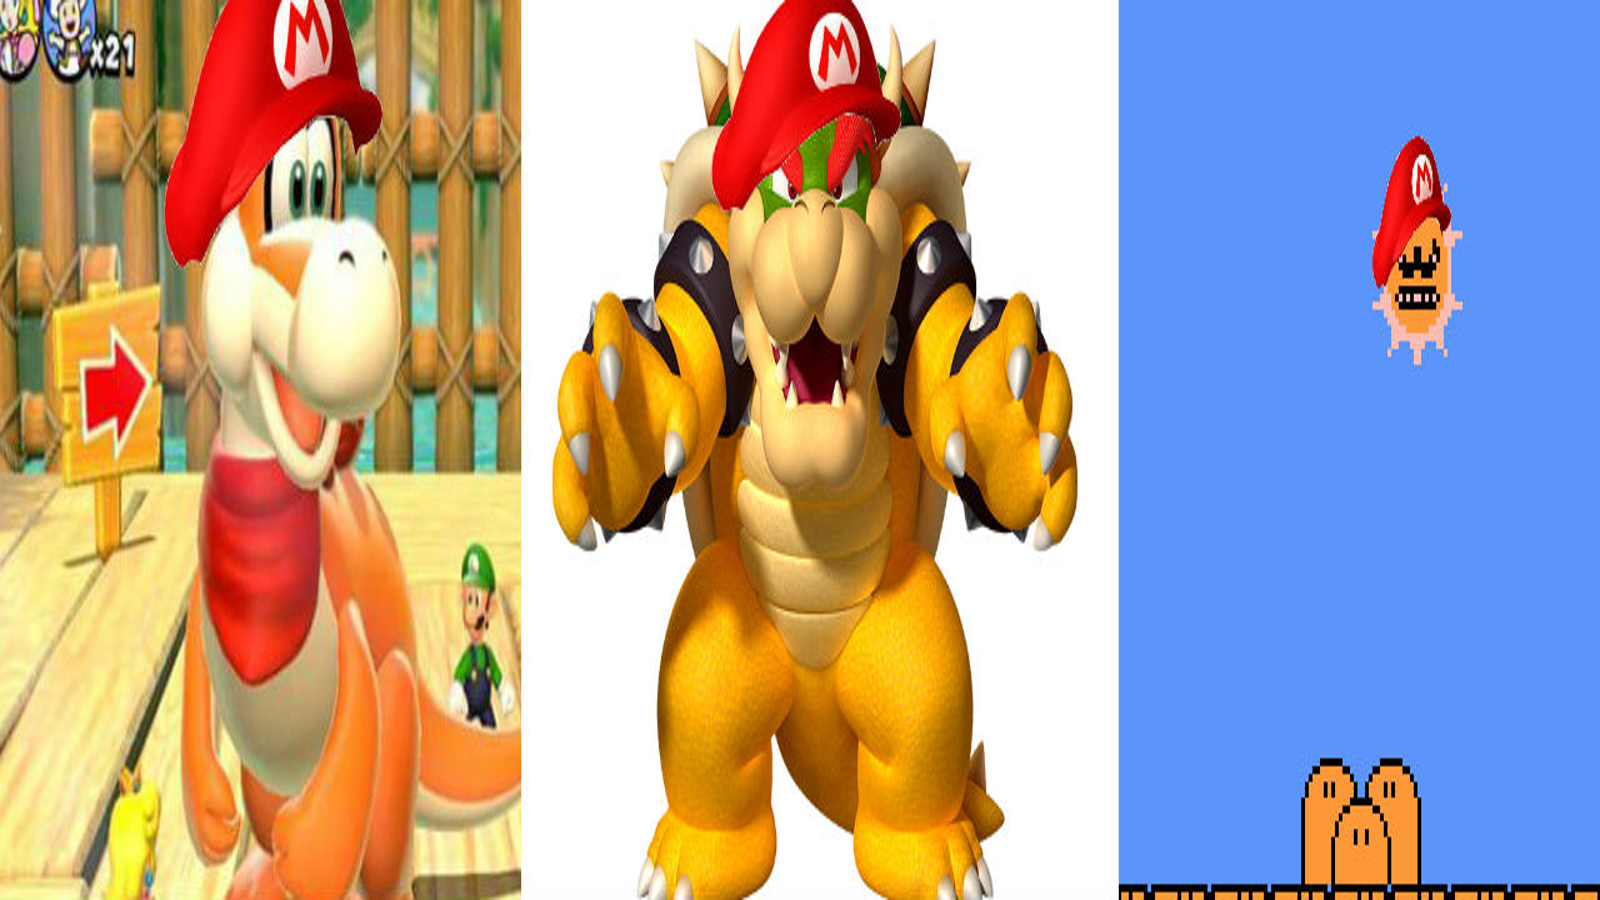 Mario: What If Mario vs Chrome Dino Game - Mario Bros. 